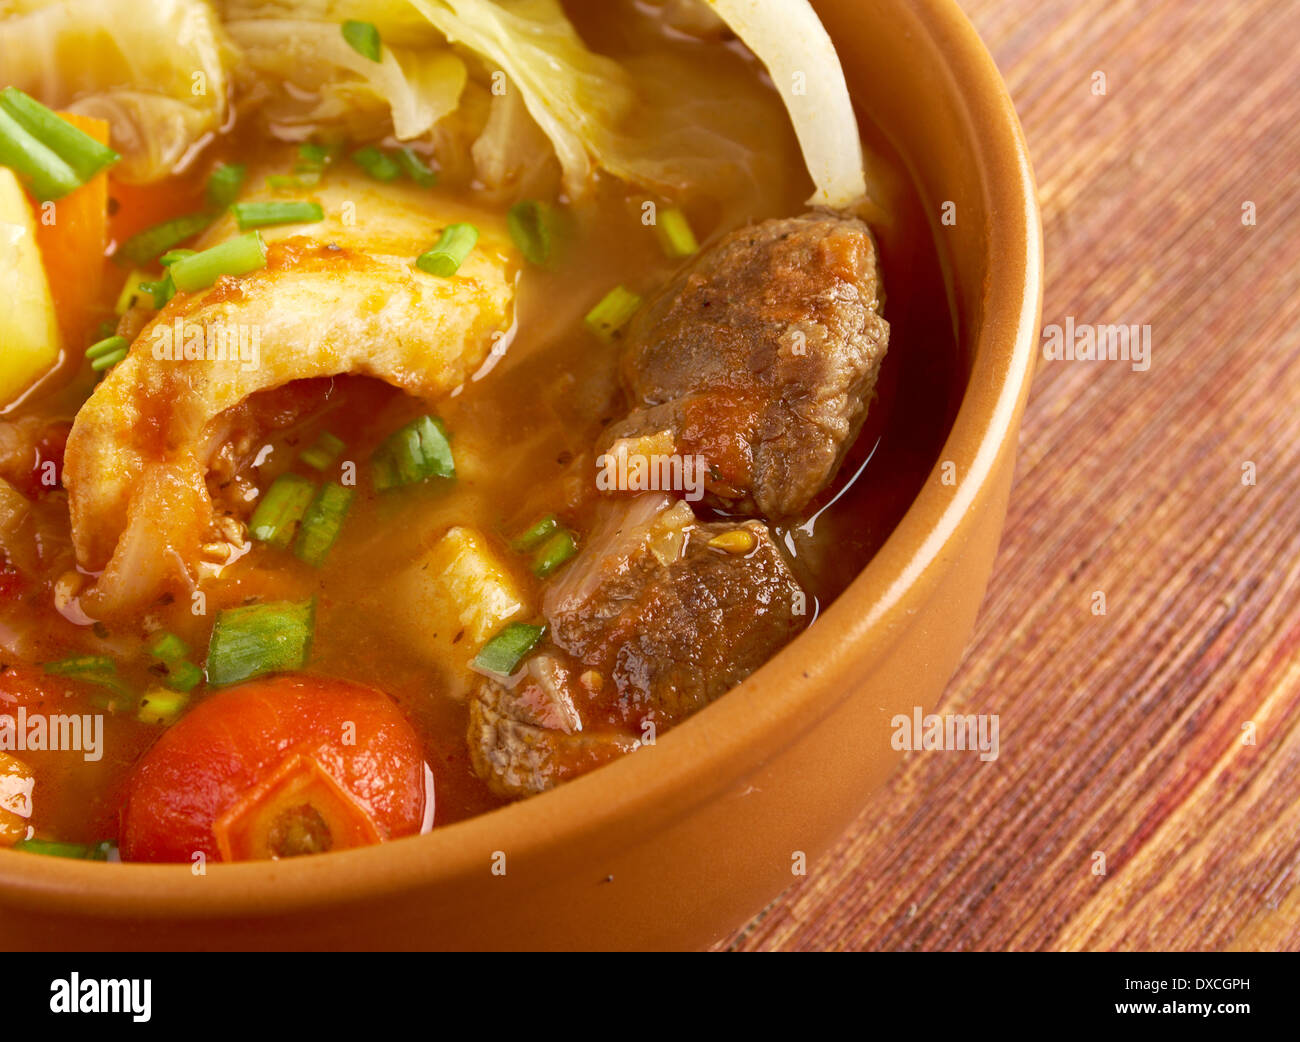 Caldo де Res - Messicano tradizionale zuppa di carne di manzo Foto Stock